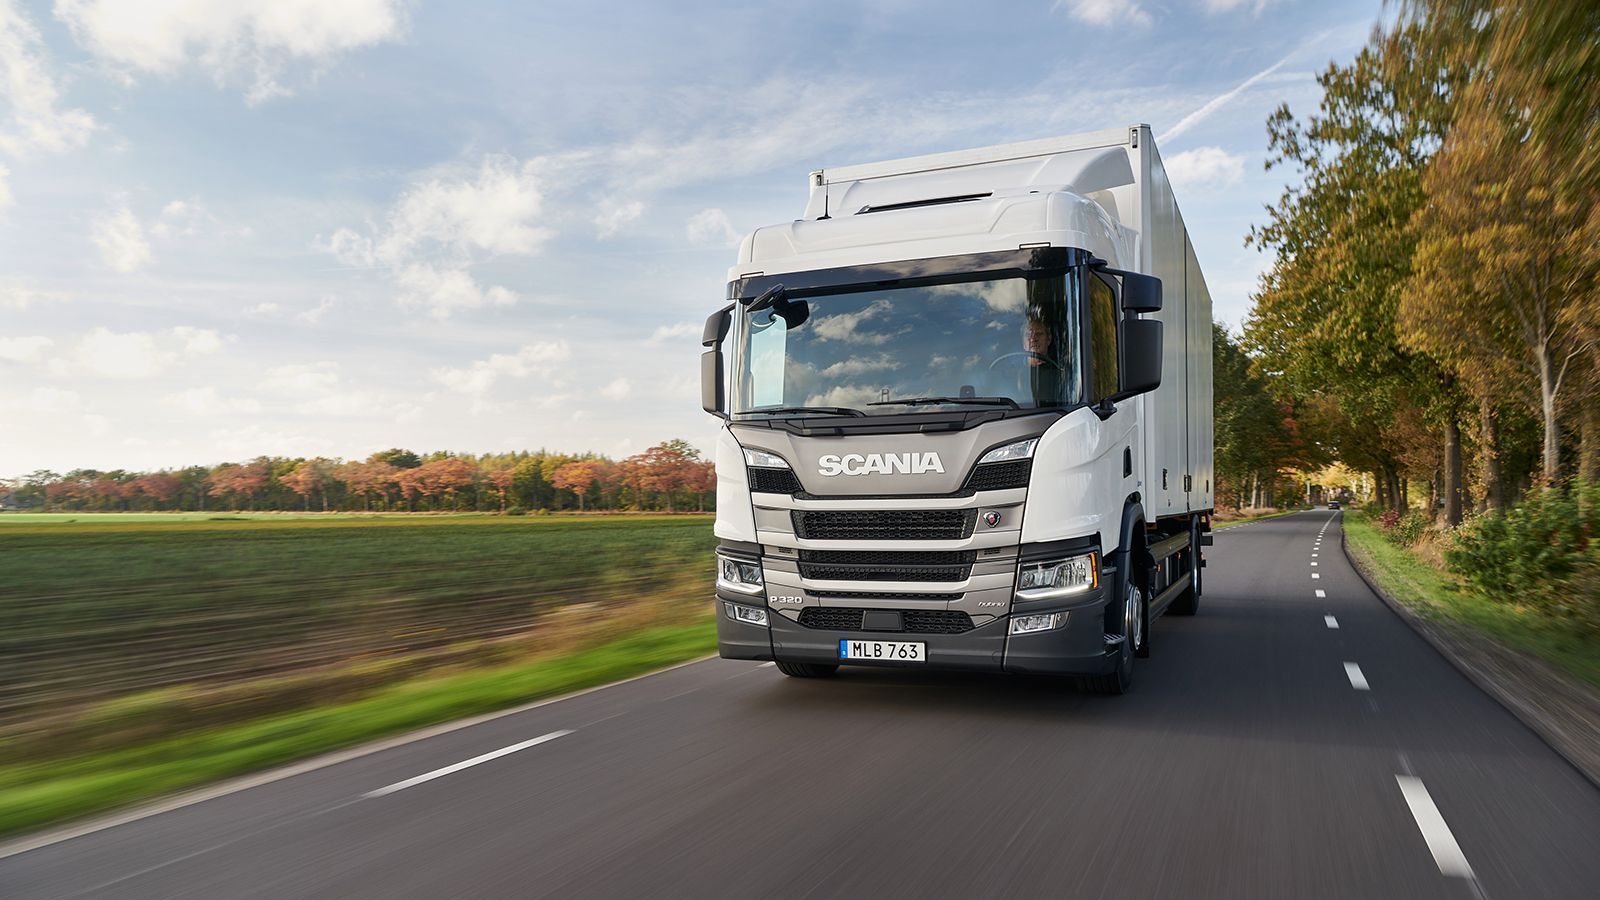 Ηλεκτρική αυτονομία έως και 60 χλμ. προσφέρει το plug-in-hybrid φορτηγό της Scania, η οποία διαθέτει και απλό υβριδικό μοντέλο. 